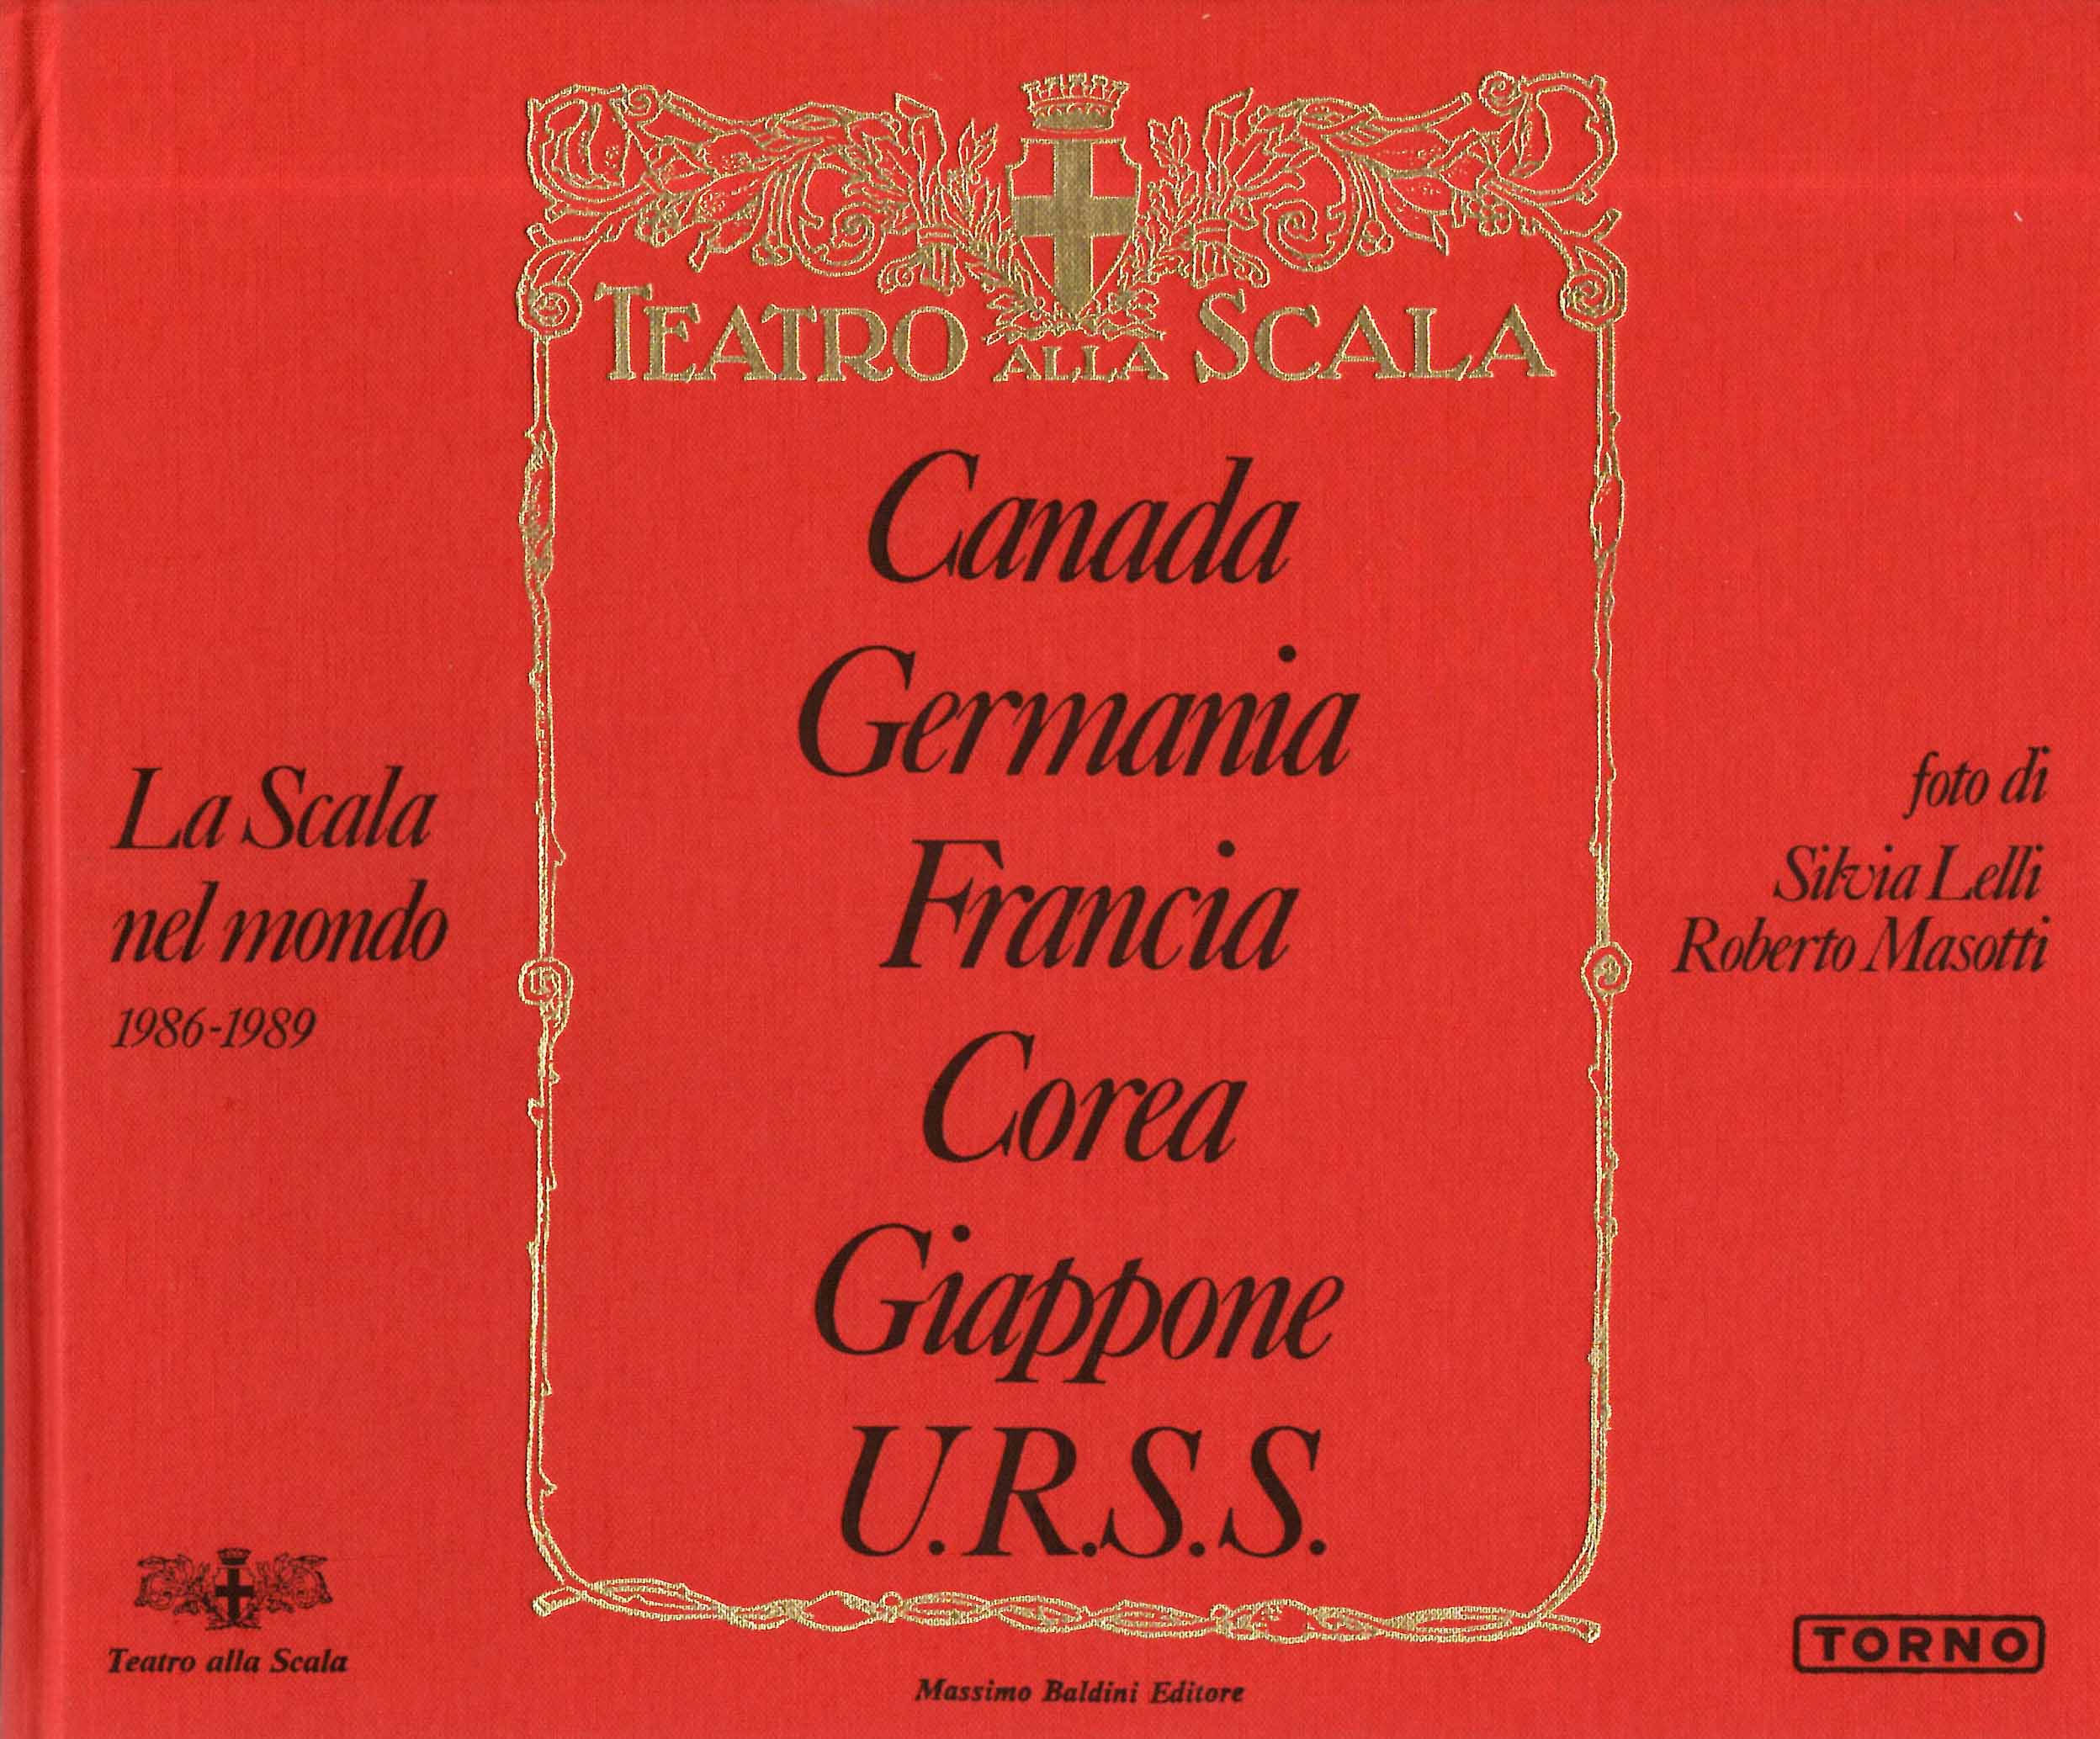 La Scala nel mondo 1986-1989. Canada Germania Francia Corea Giappone URSS